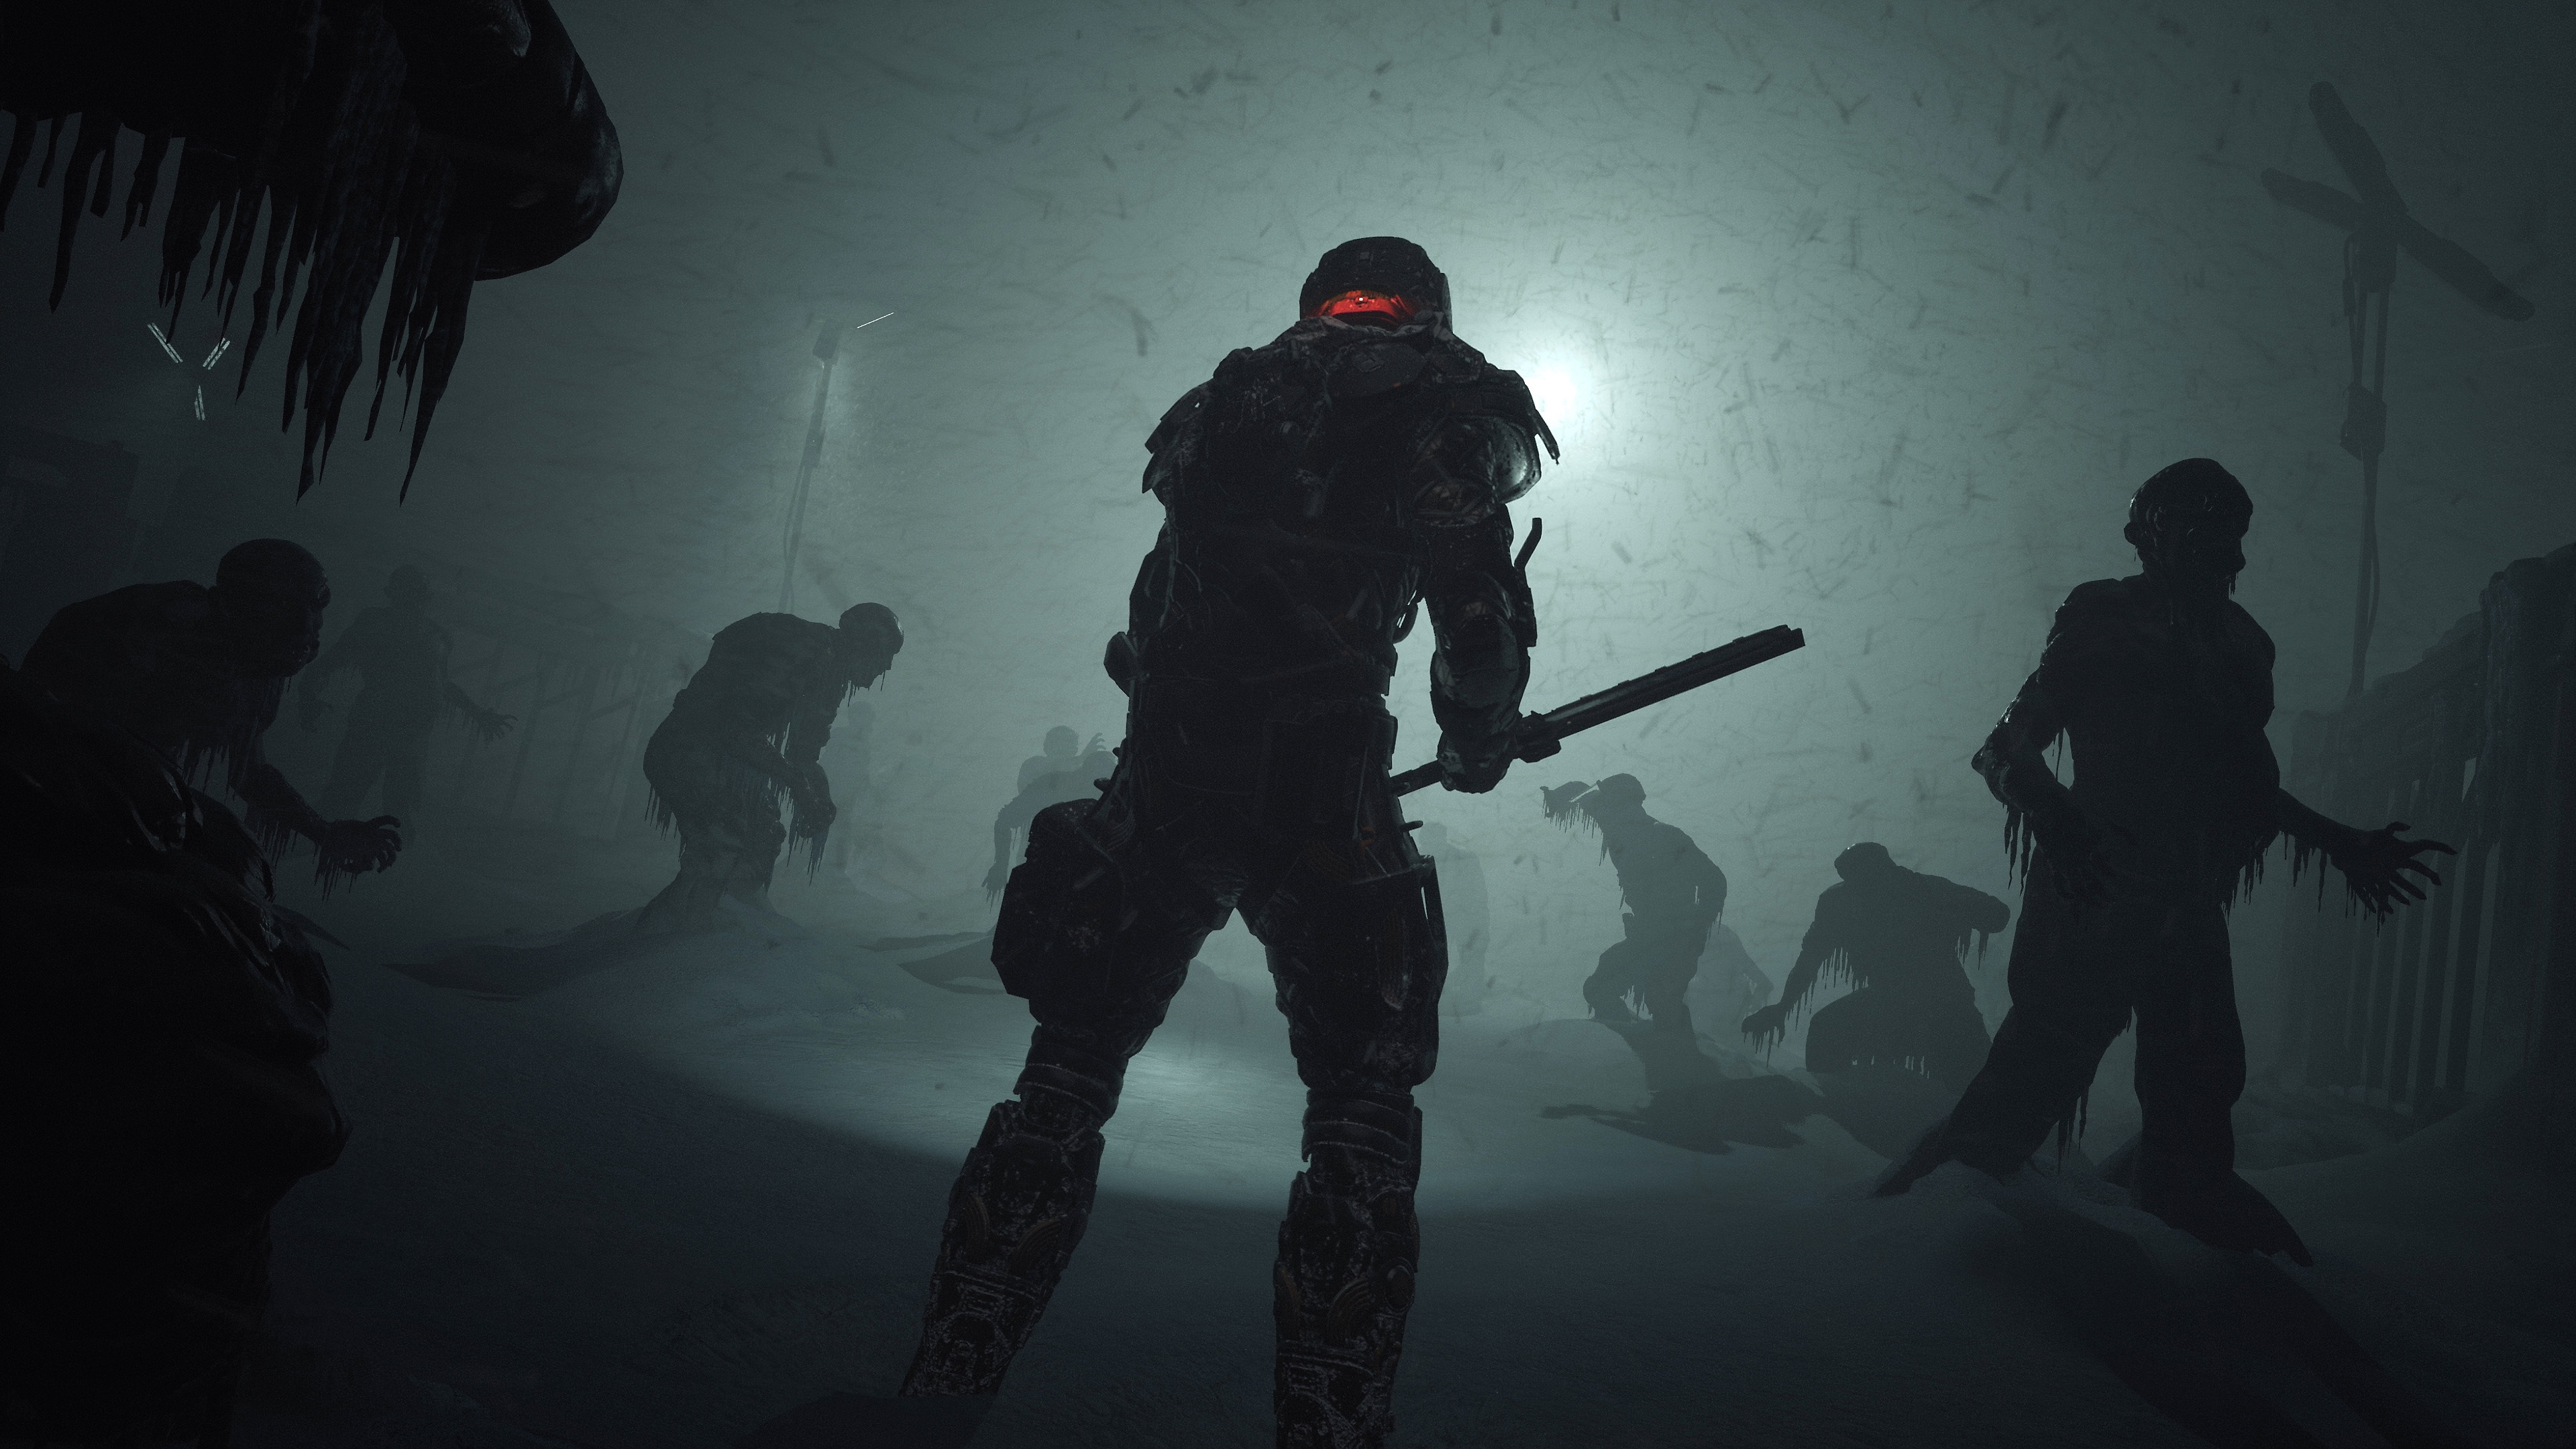 Captura de pantalla de The Callisto Protocol que muestra a un personaje empuñando un arma similar a una porra frente a varios cuerpos congelados